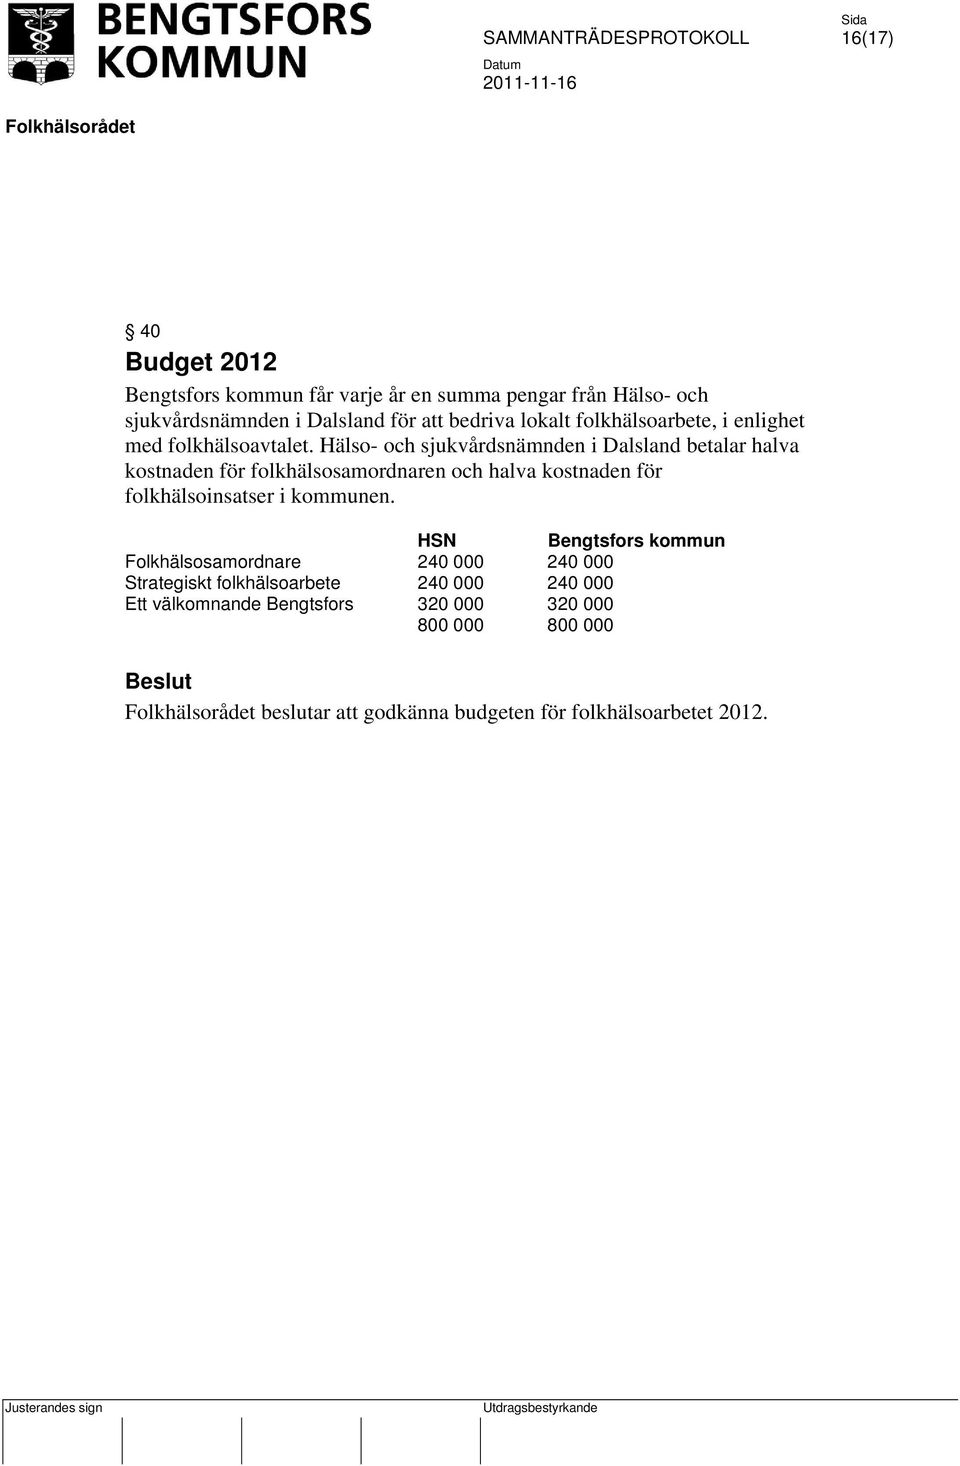 Hälso- och sjukvårdsnämnden i Dalsland betalar halva kostnaden för folkhälsosamordnaren och halva kostnaden för folkhälsoinsatser i